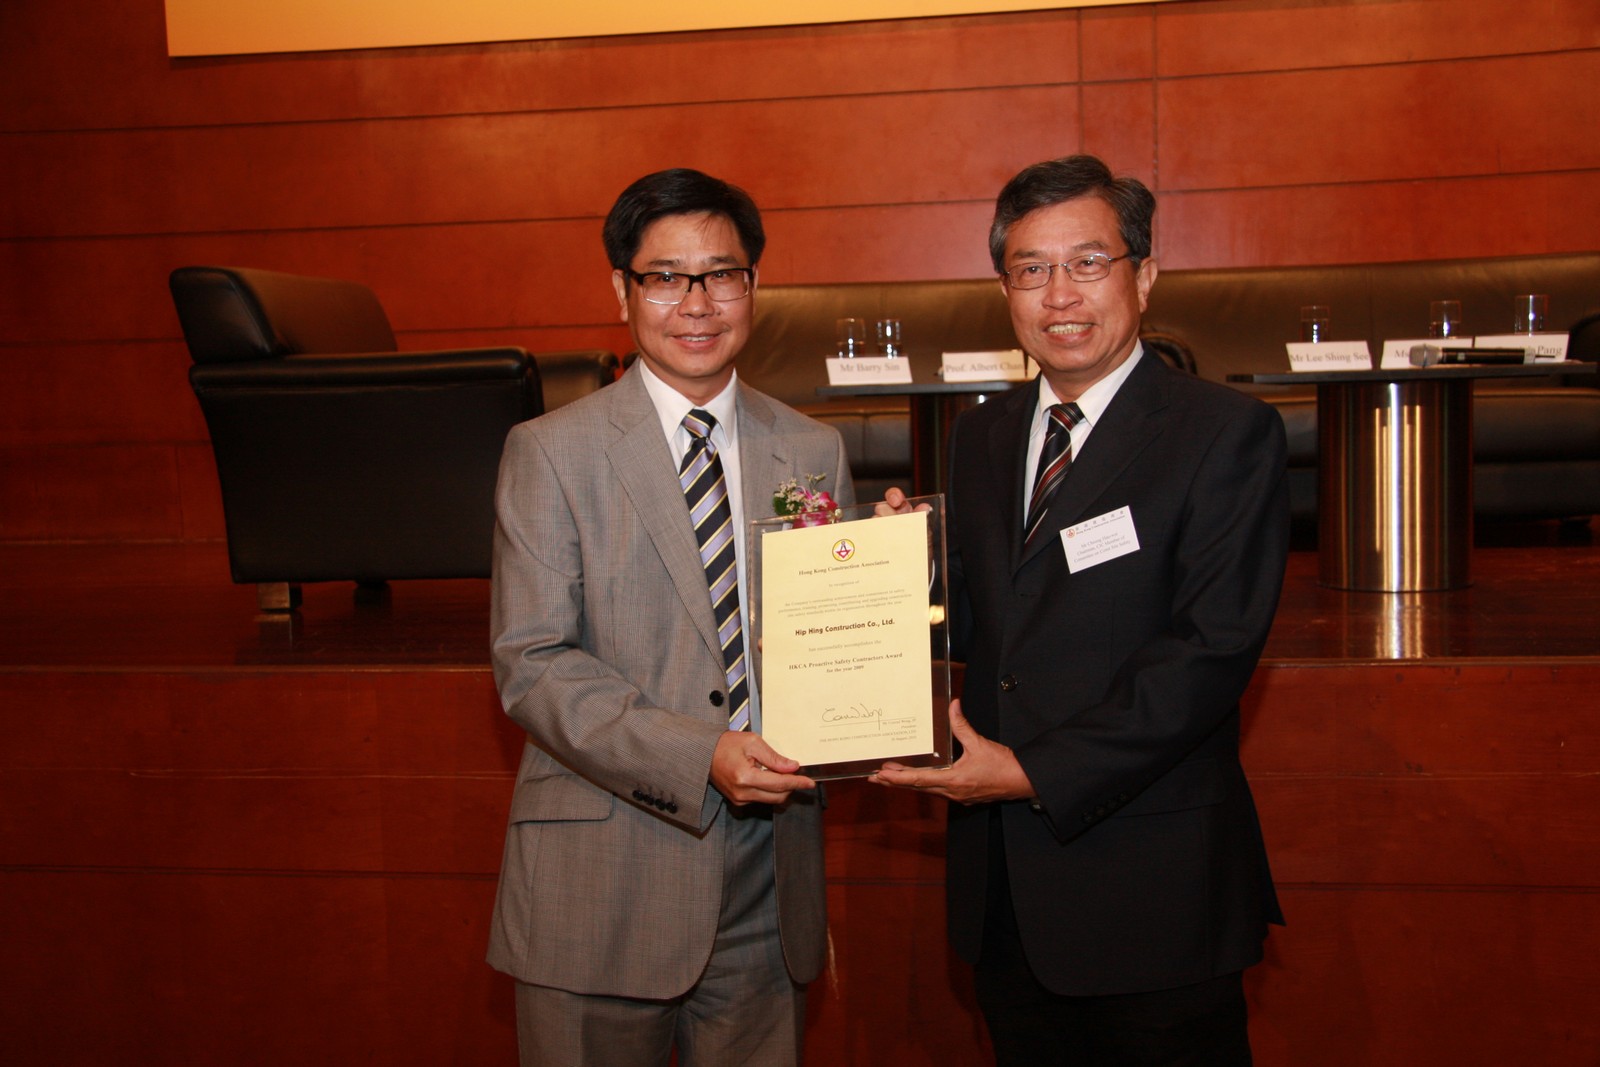 总经理(工程合约)冼永寧先生代表协兴建筑有限公司接受香港建造商会 2009年度积极推动安全奖